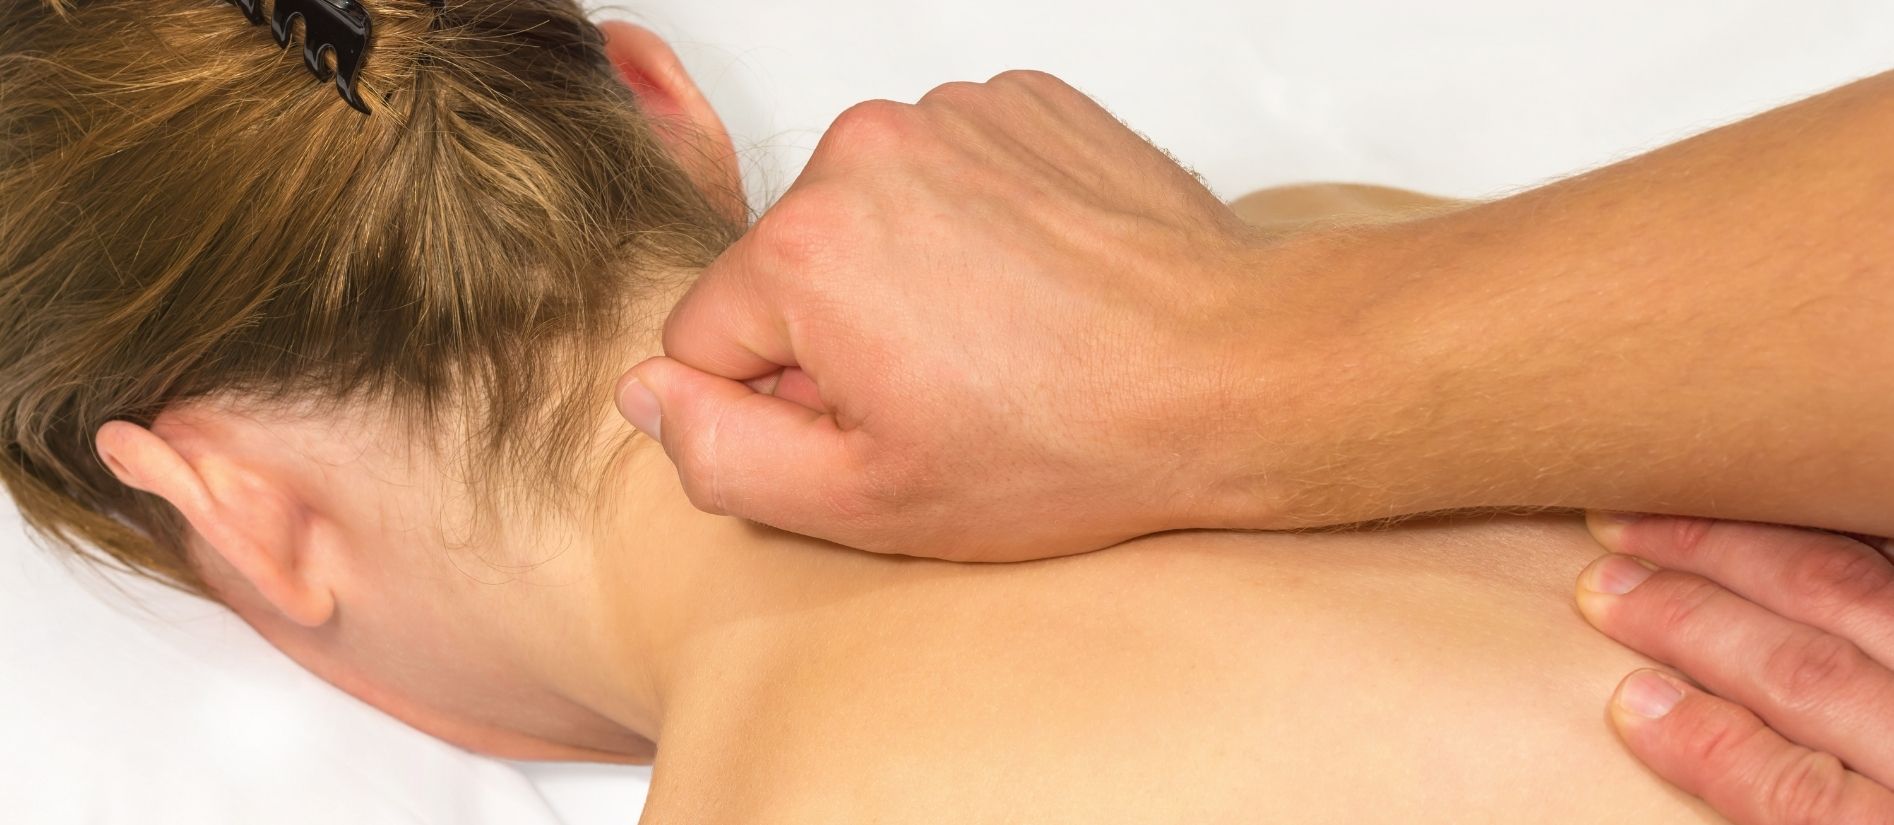 Masaż leczniczy kręgosłupa – skuteczny sposób na problemy z kręgosłupem